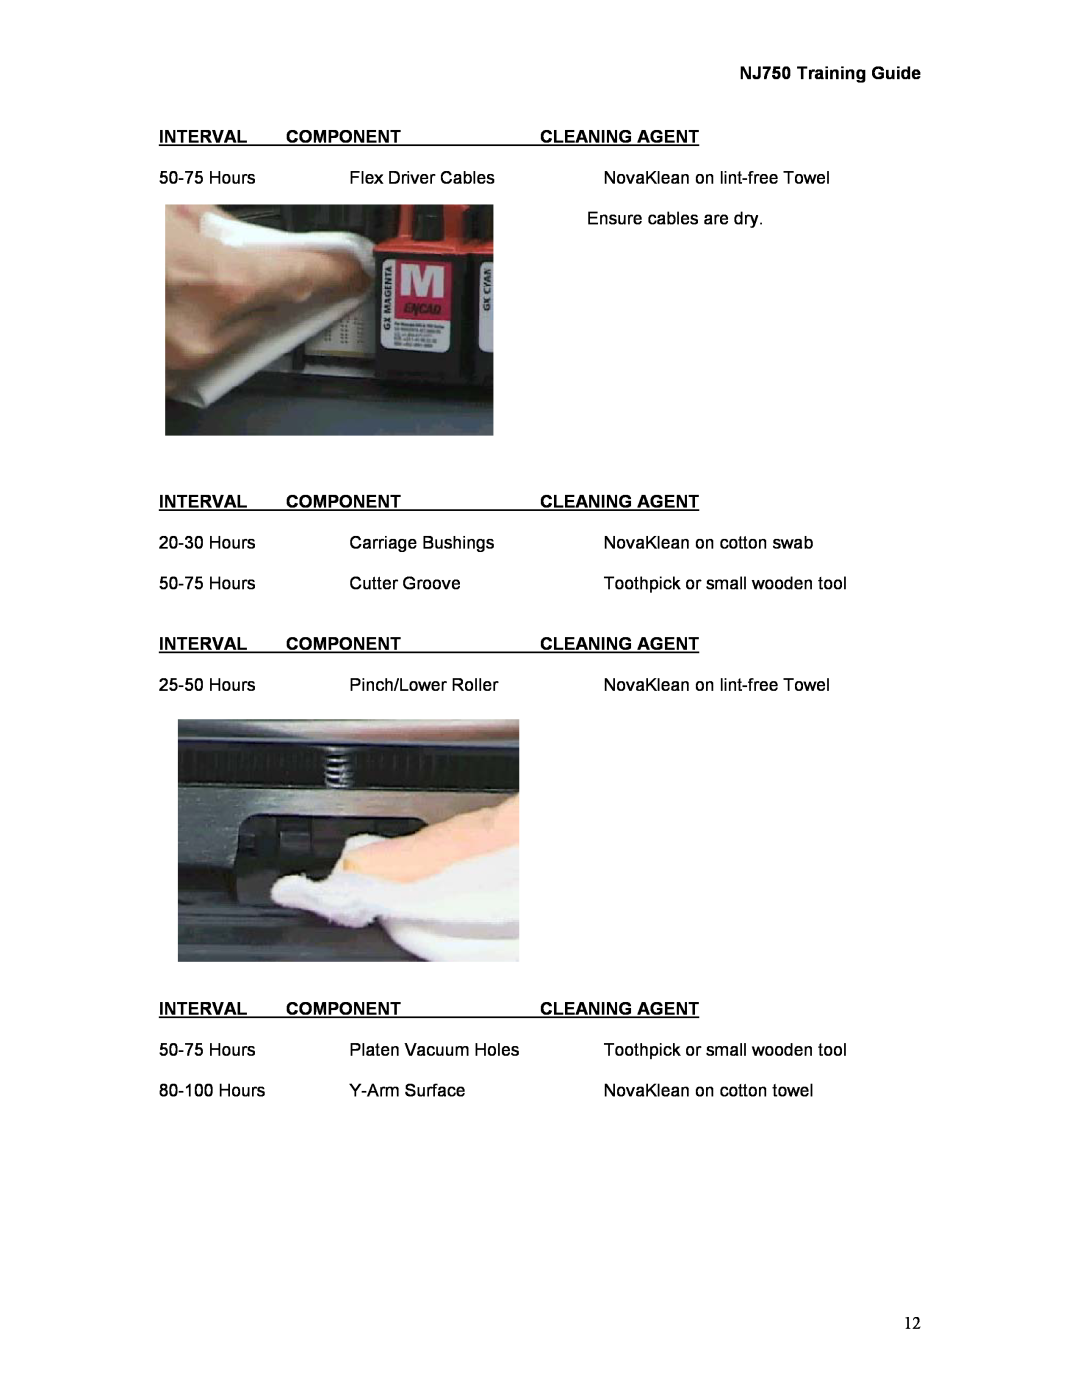 Kodak manual NJ750 Training Guide 